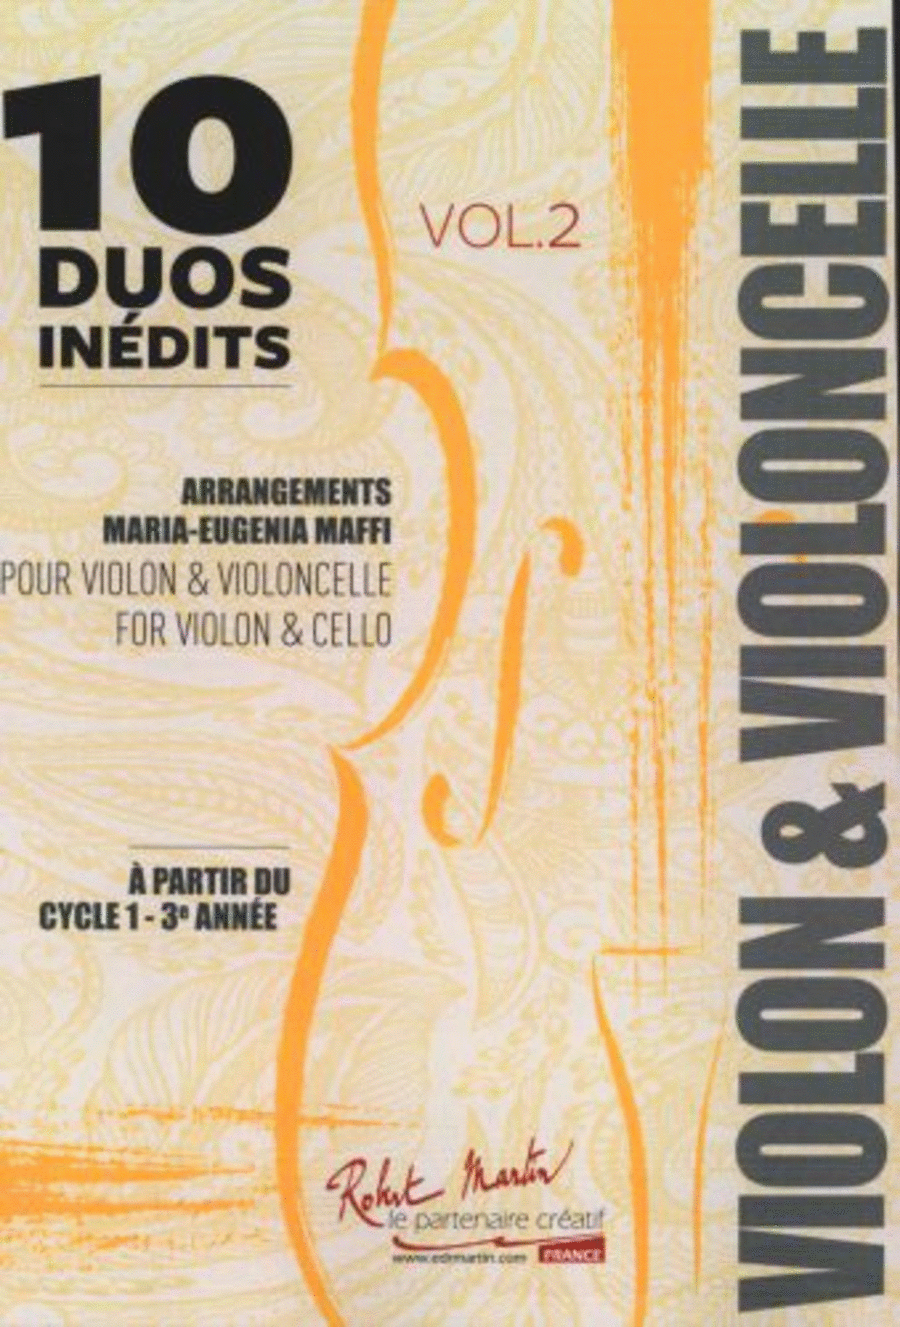 10 duos inedits vol 2 pour violon & violoncelle